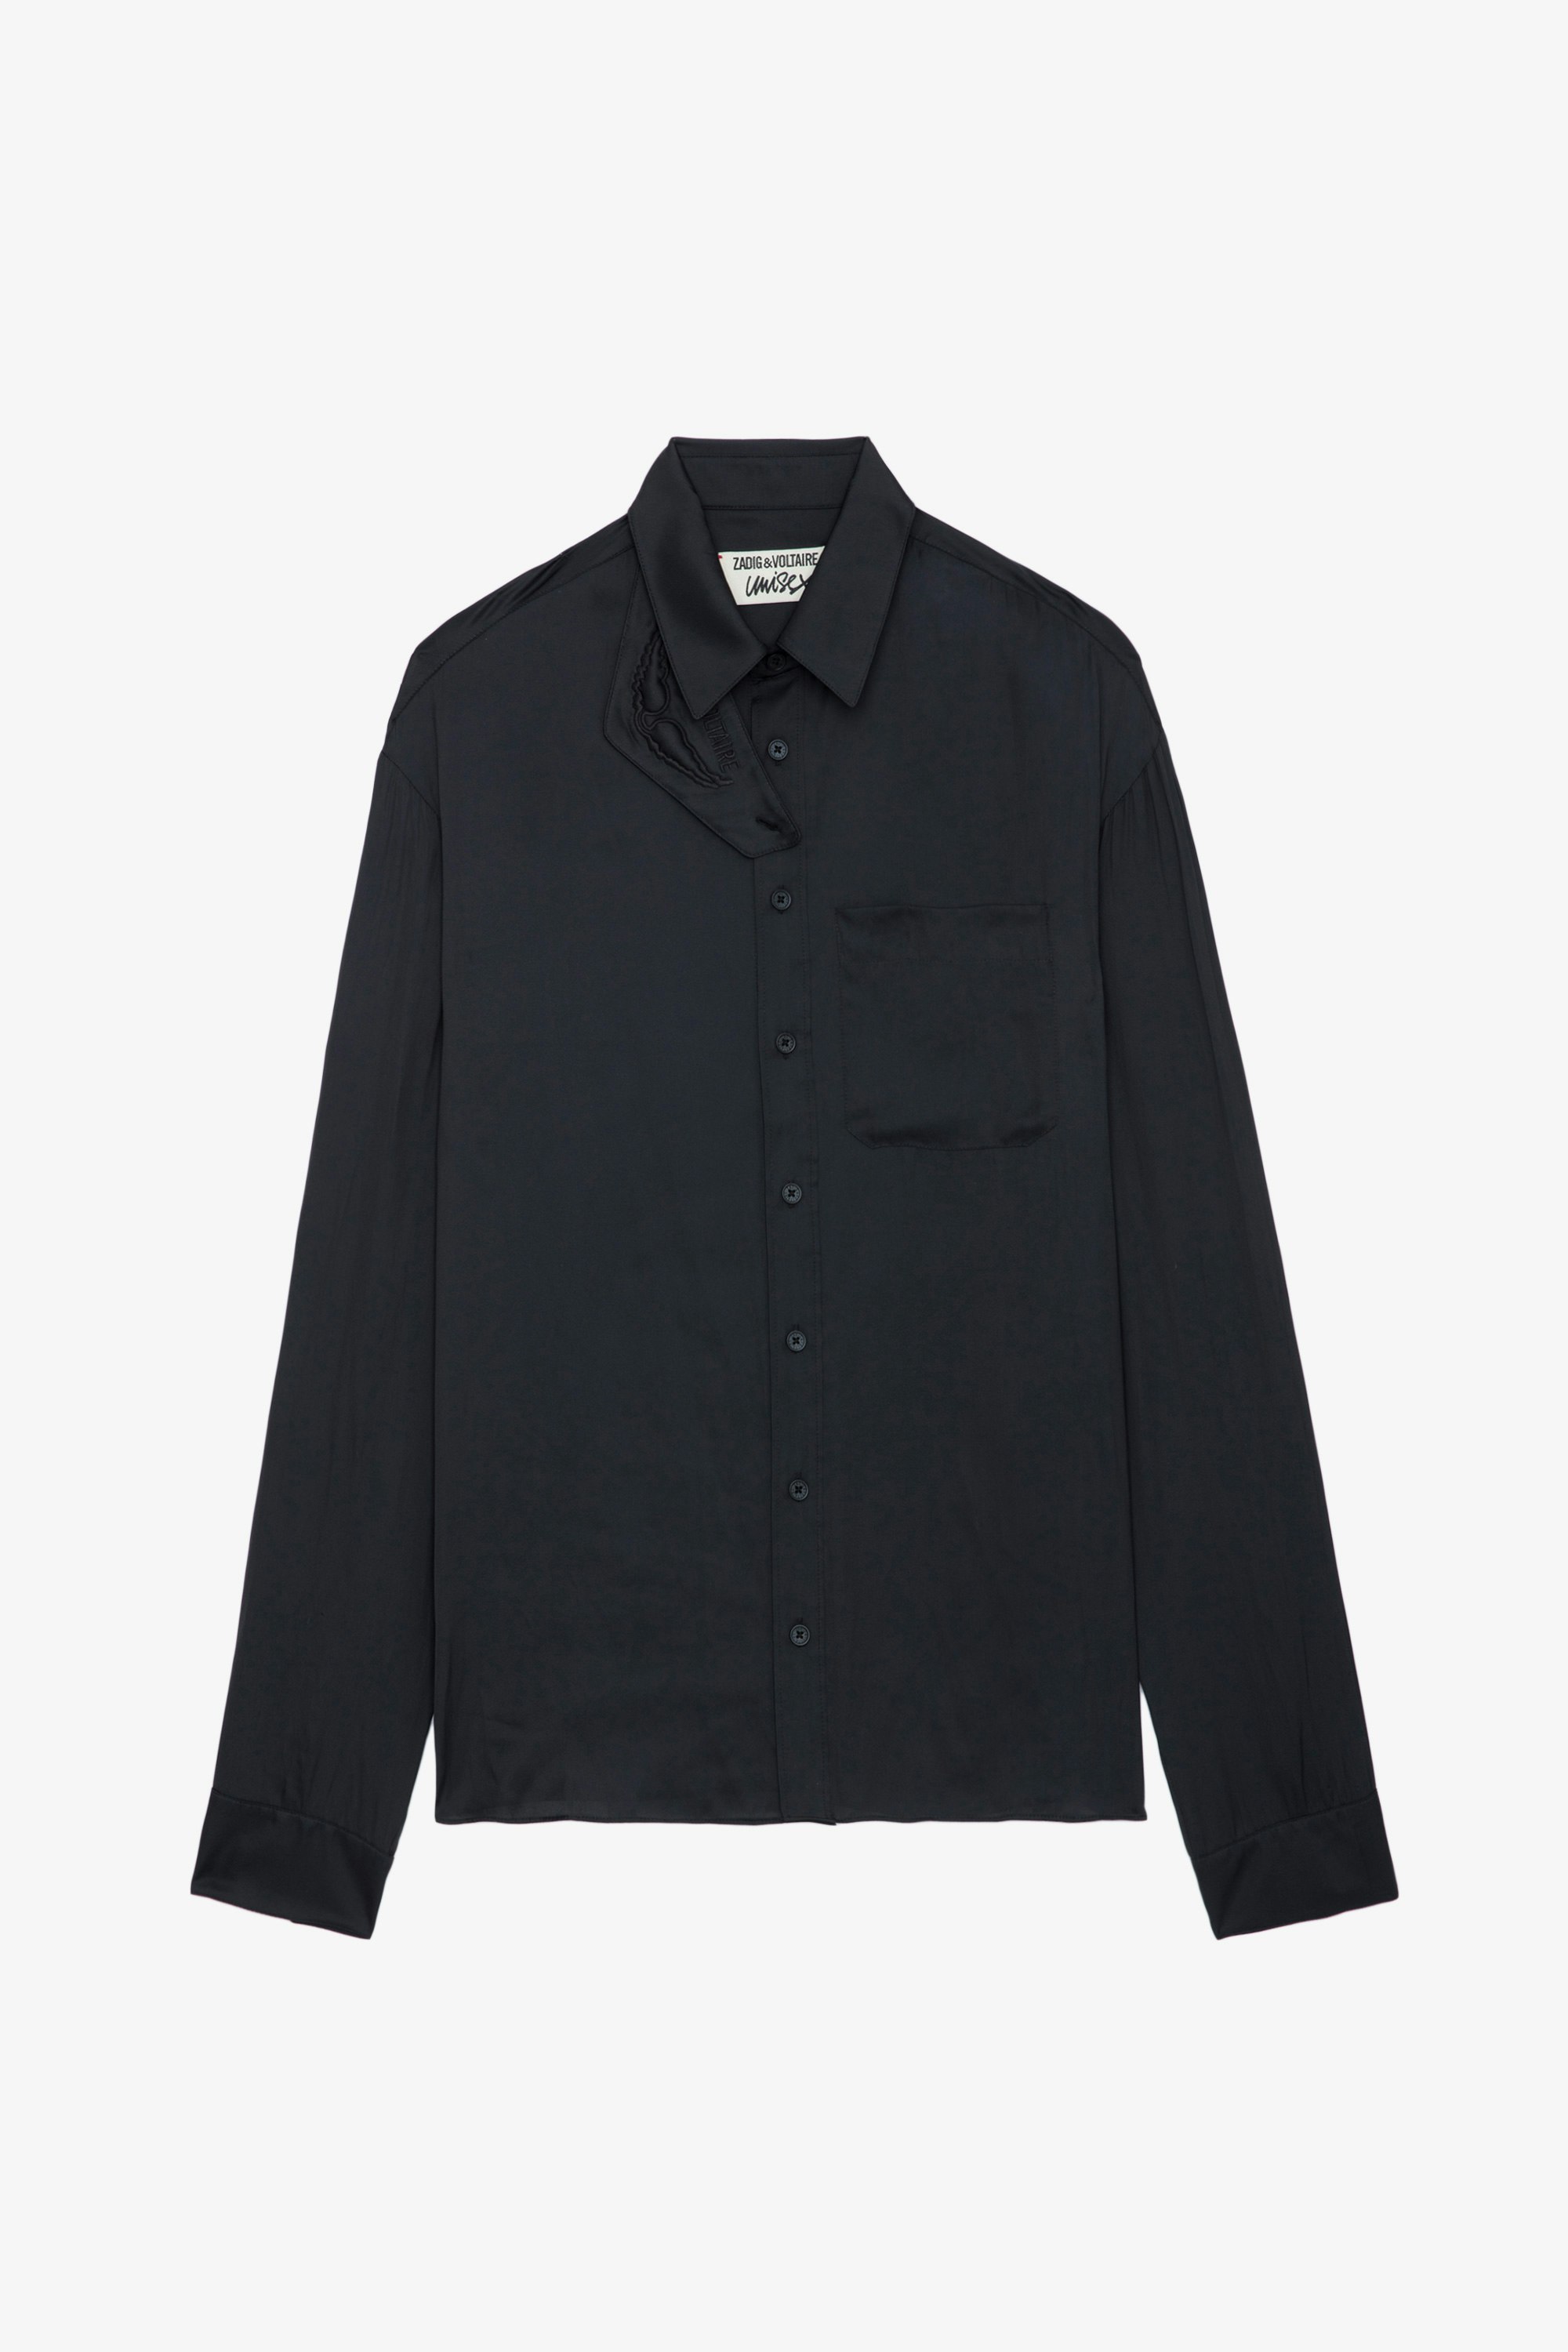 Chemise Tyrone Satin - Chemise en satin noir à fermeture boutonnée, poche et col à protection amovible.